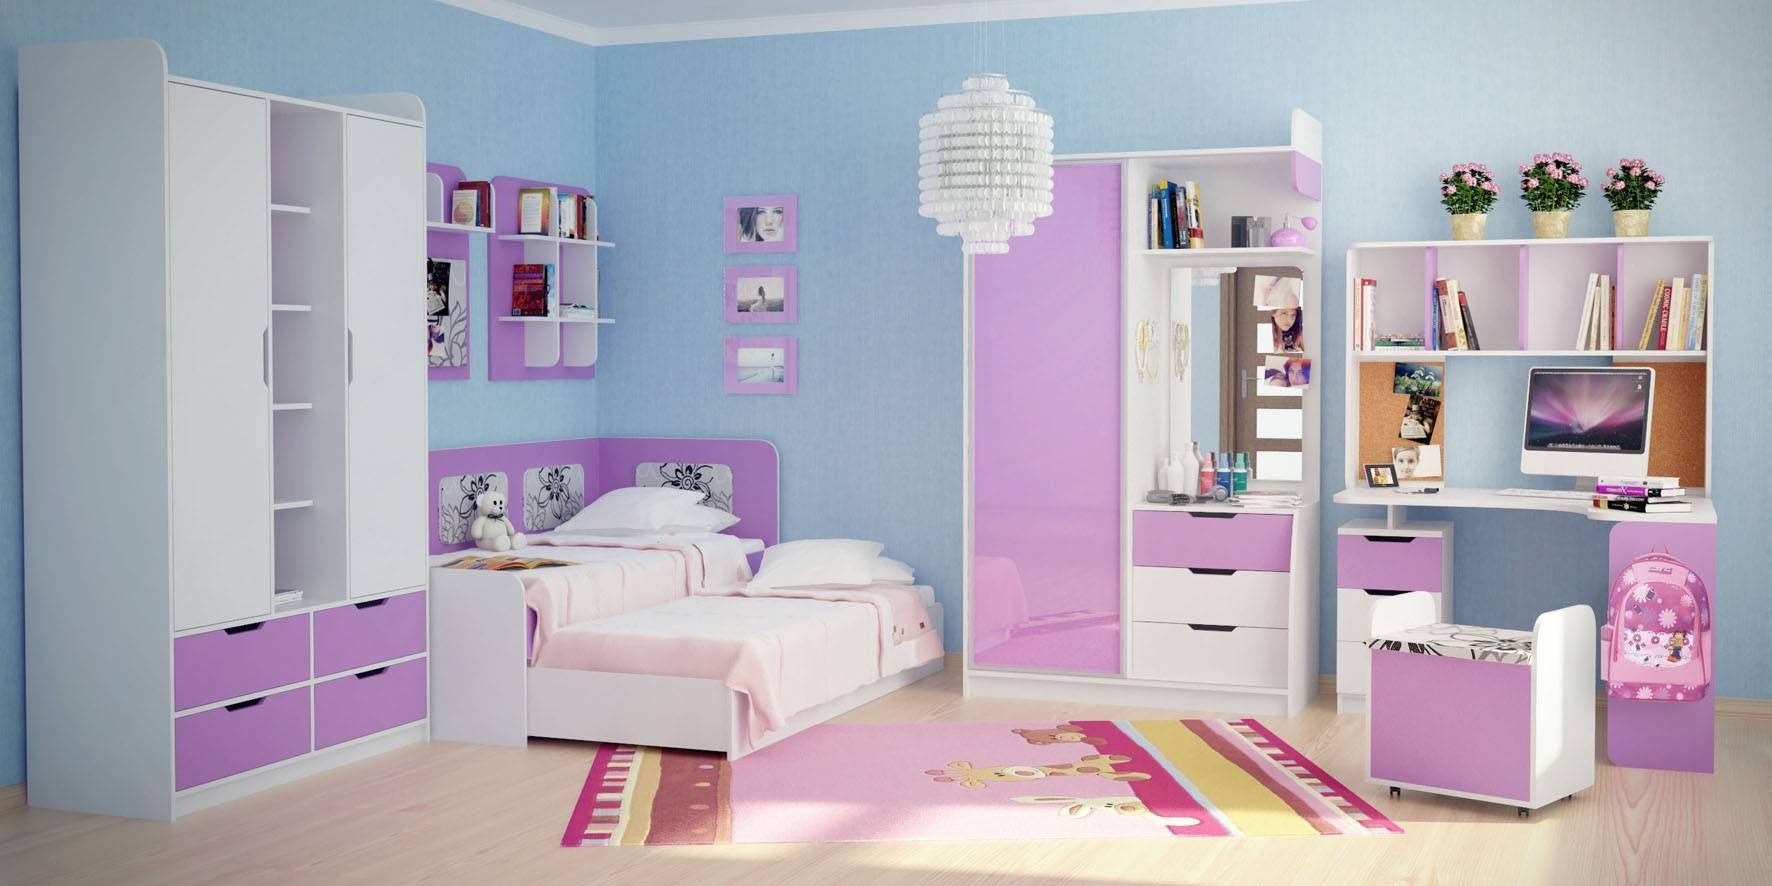 Дизайн спальни для мальчика: интересные примеры оформления на фото
дизайн спальни для мальчика: интересные примеры оформления на фото